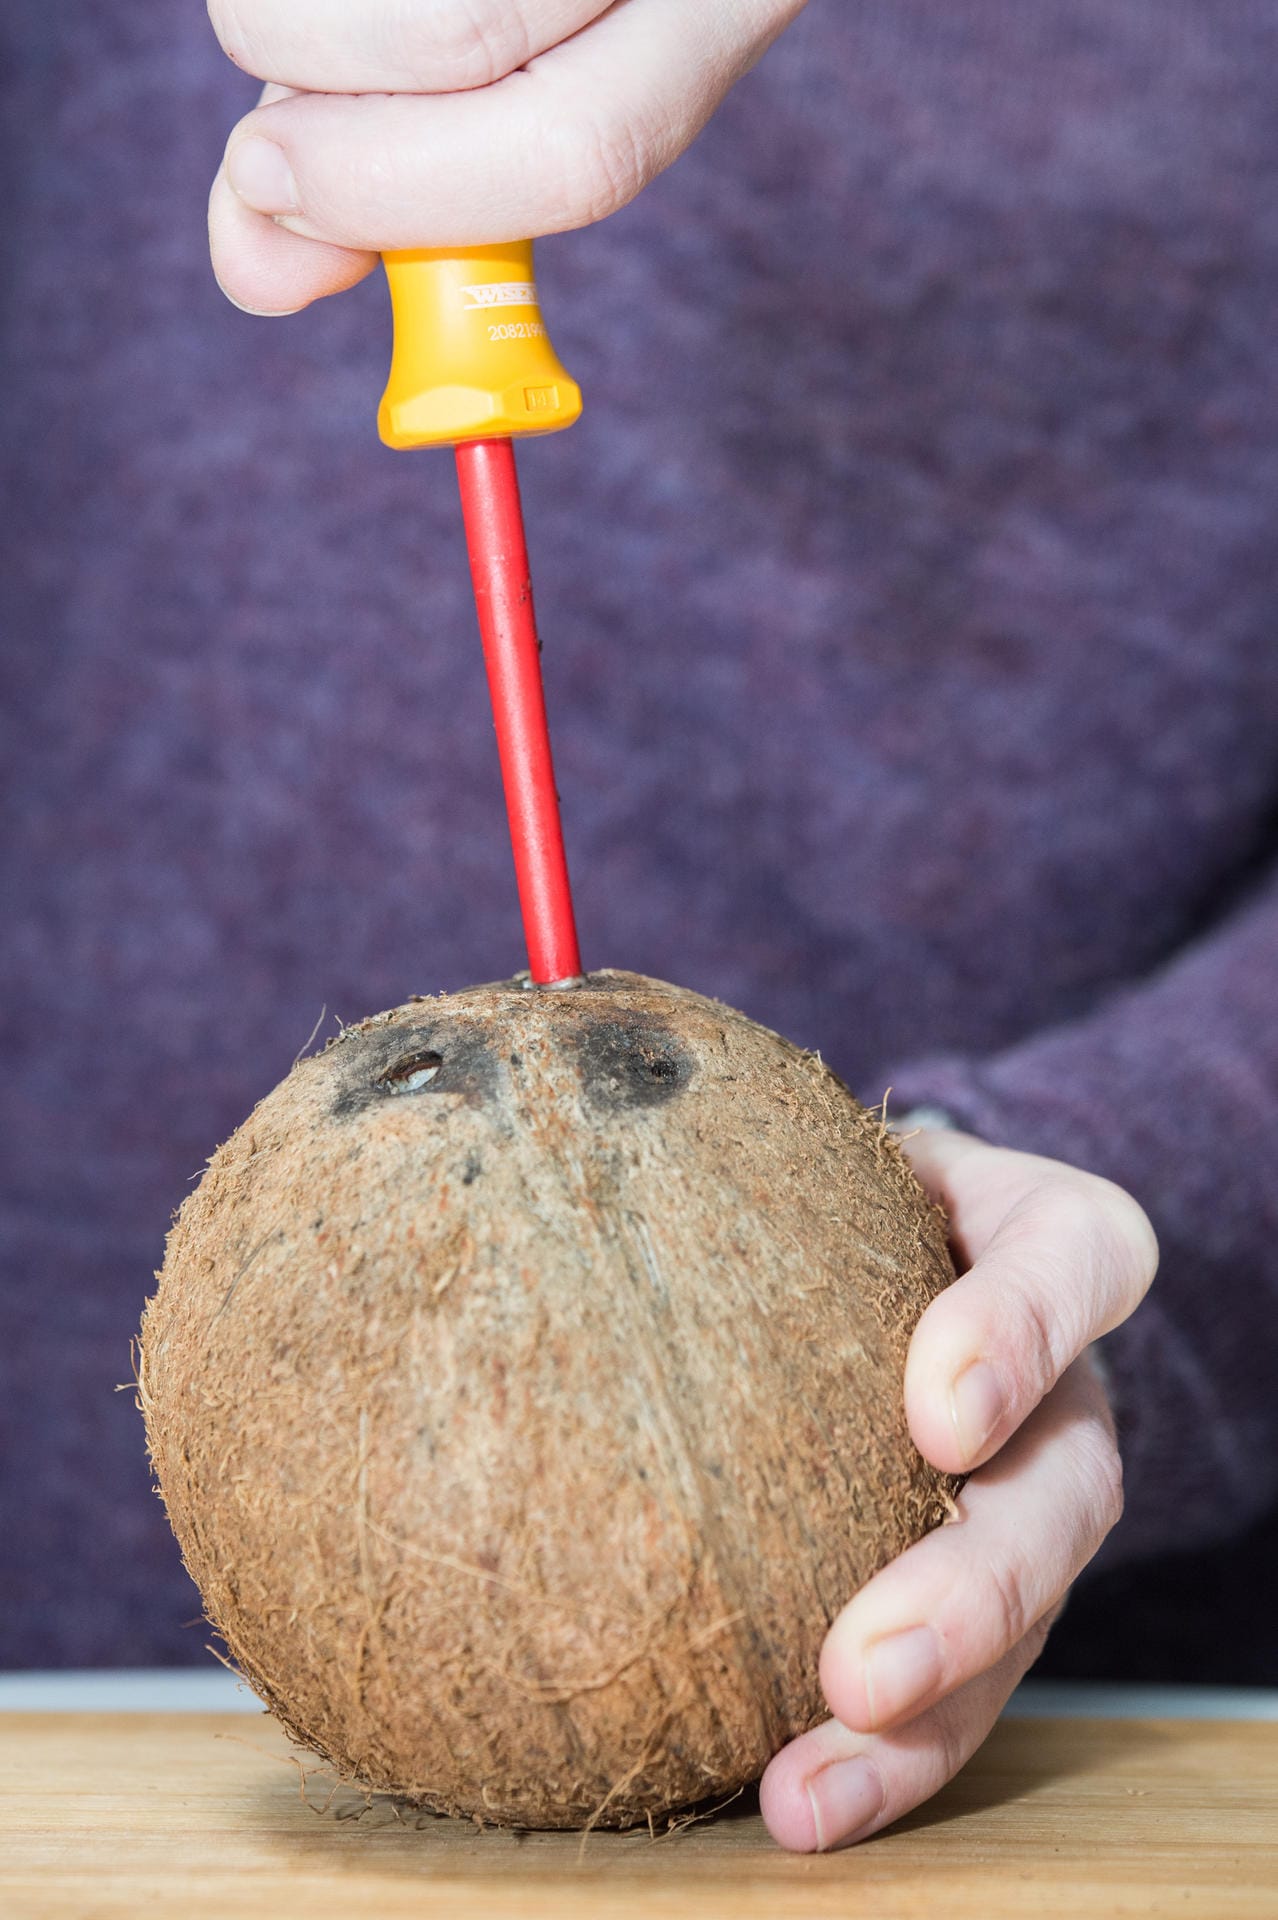 Kokosnuss: Schritt 1 – Mit einem Schraubenzieher in zwei der schwarzen Stellen der Kokosnuss ein Loch bohren.